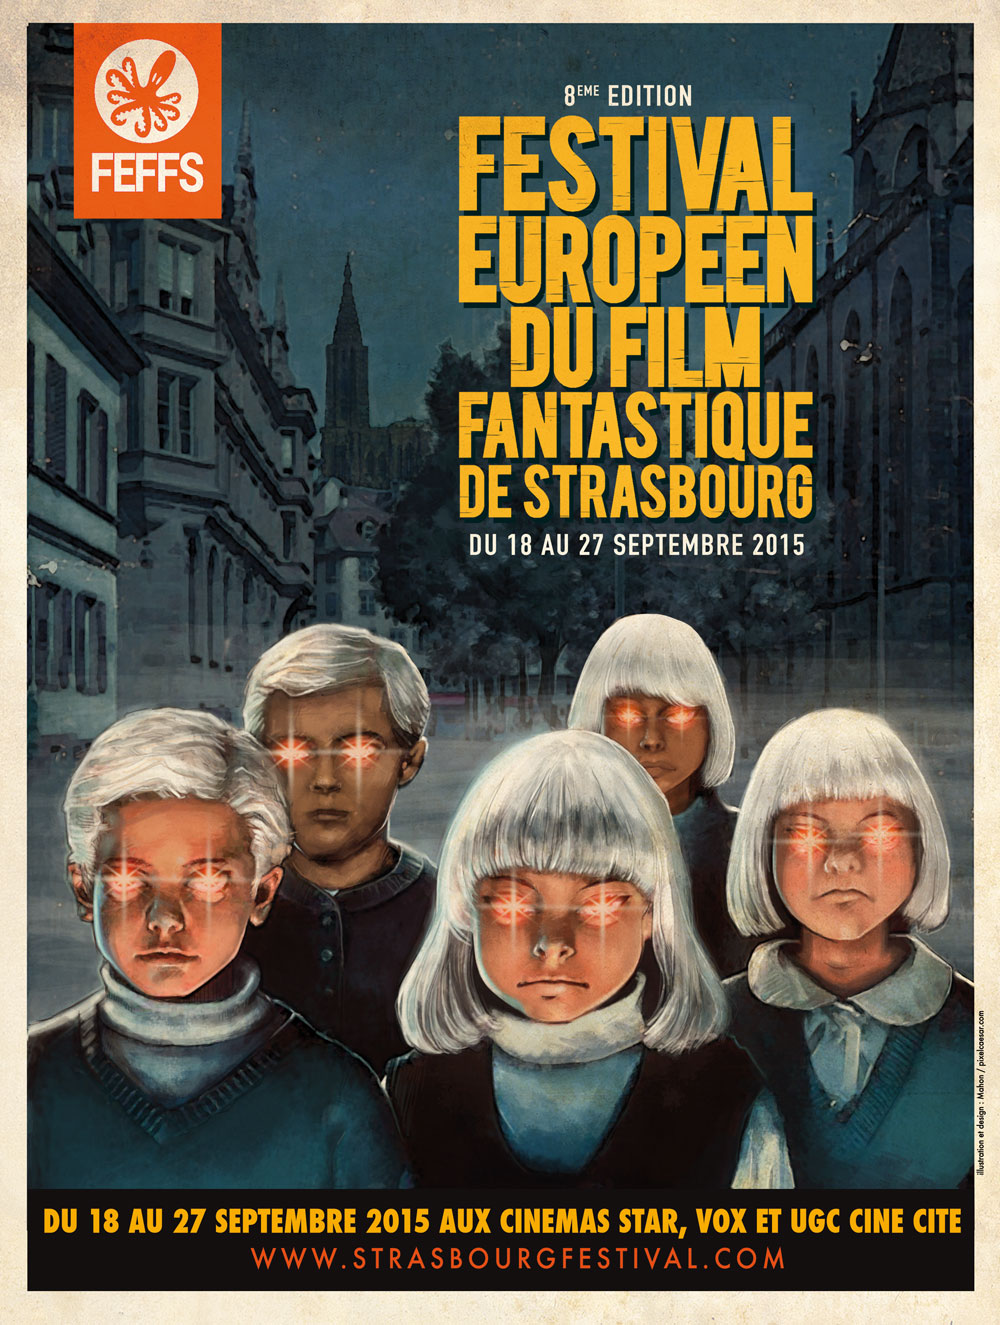 [Actus] Une affiche inquiétante pour le 8e Festival Européen du Film Fantastique de Strasbourg